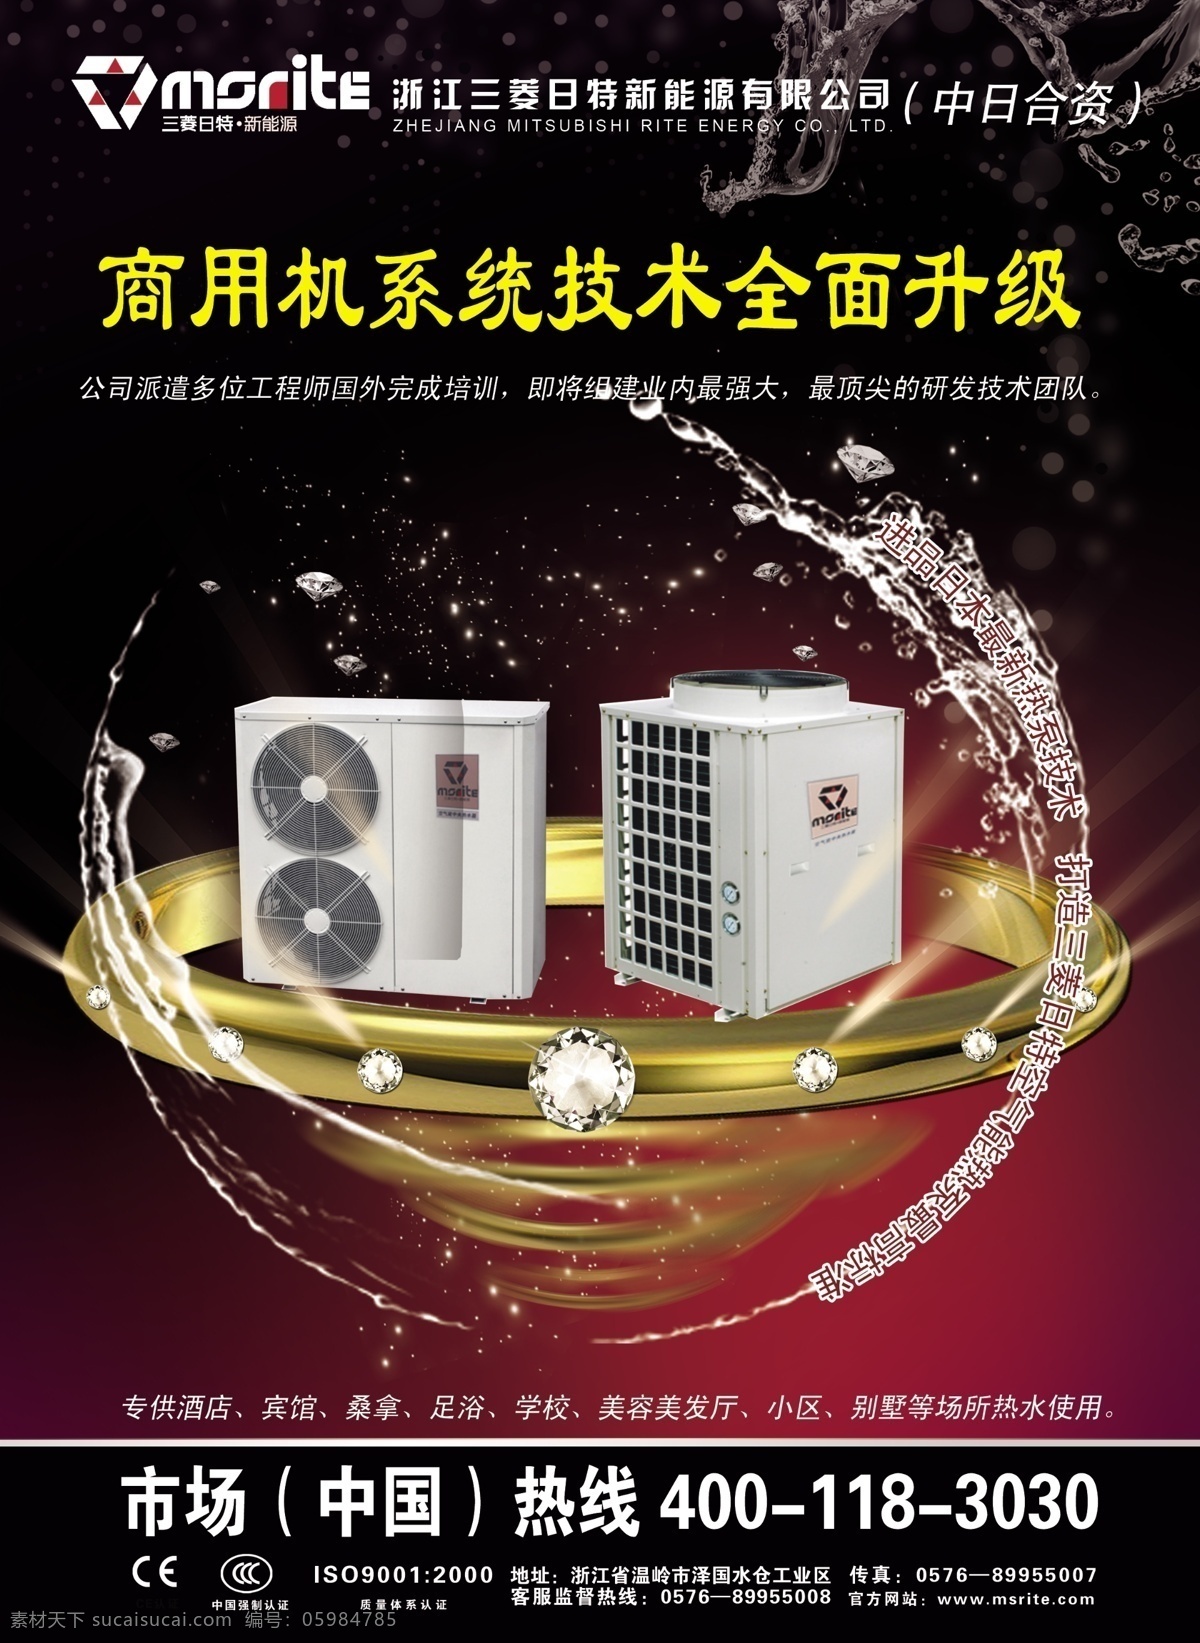 三菱空调机 中央空调 热水器 水珠 红底 黄金 美容院 水 dm宣传单 广告设计模板 源文件